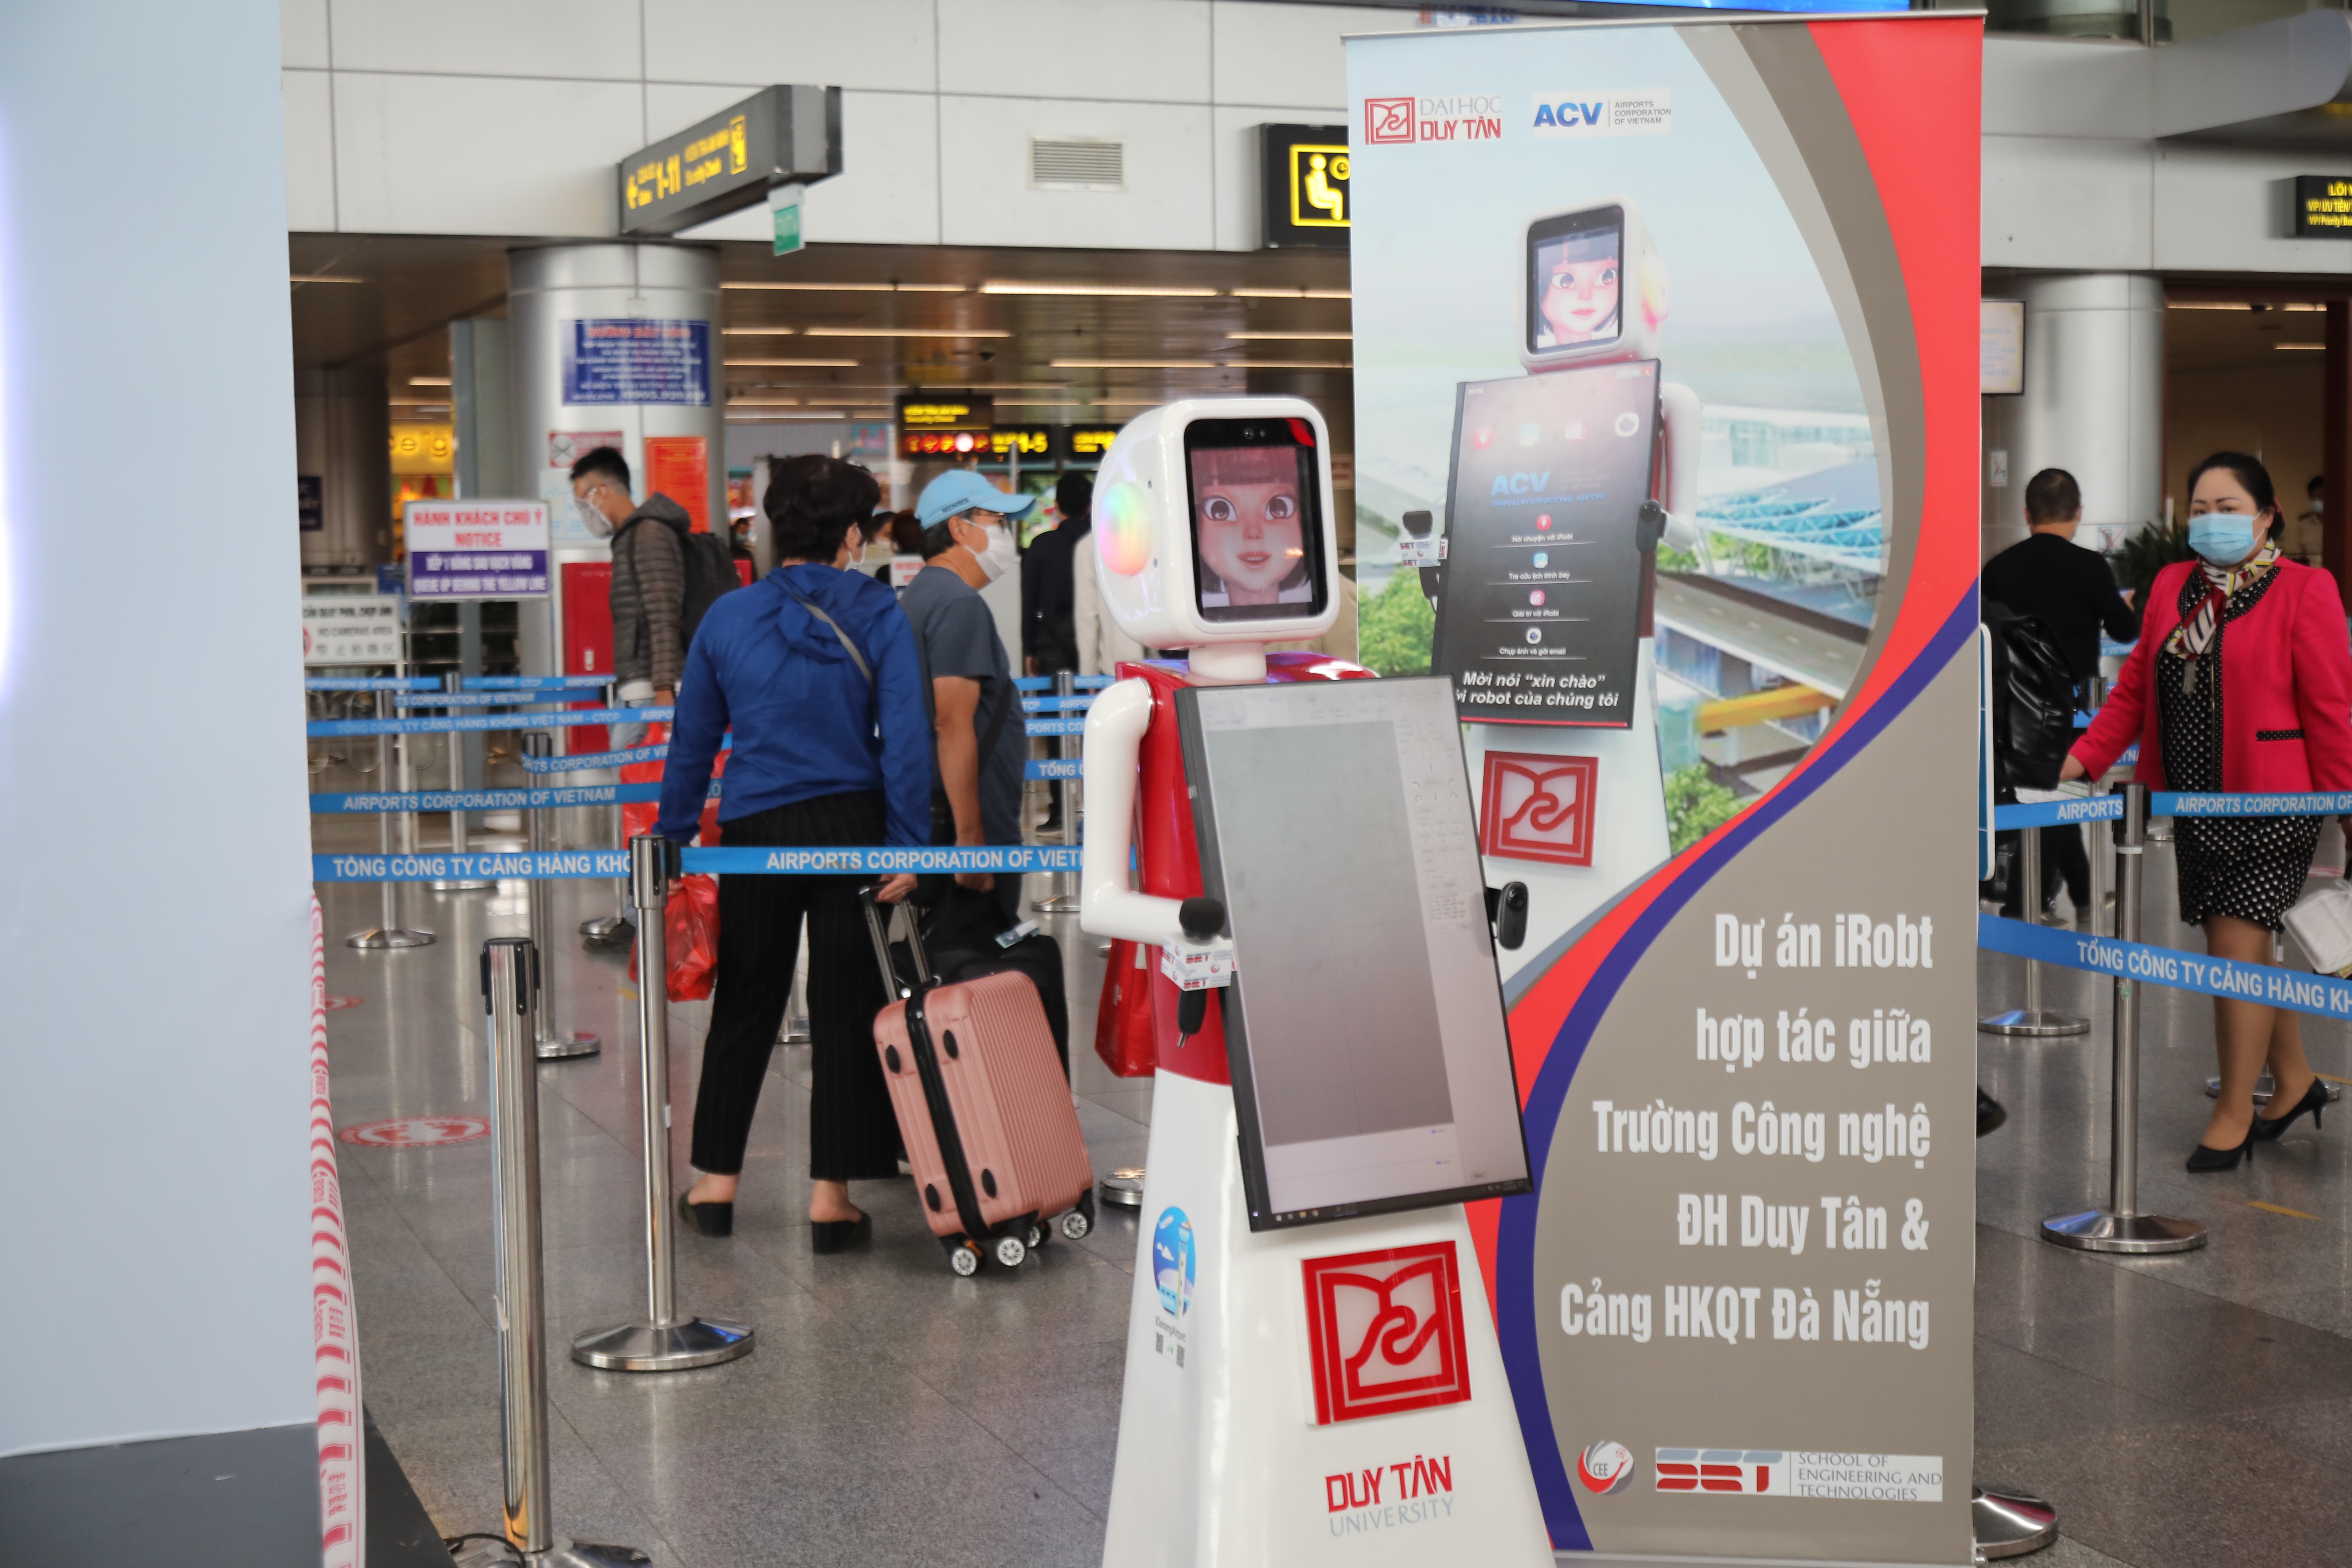 iRobt-Robot hướng dẫn hành khách đi máy bay